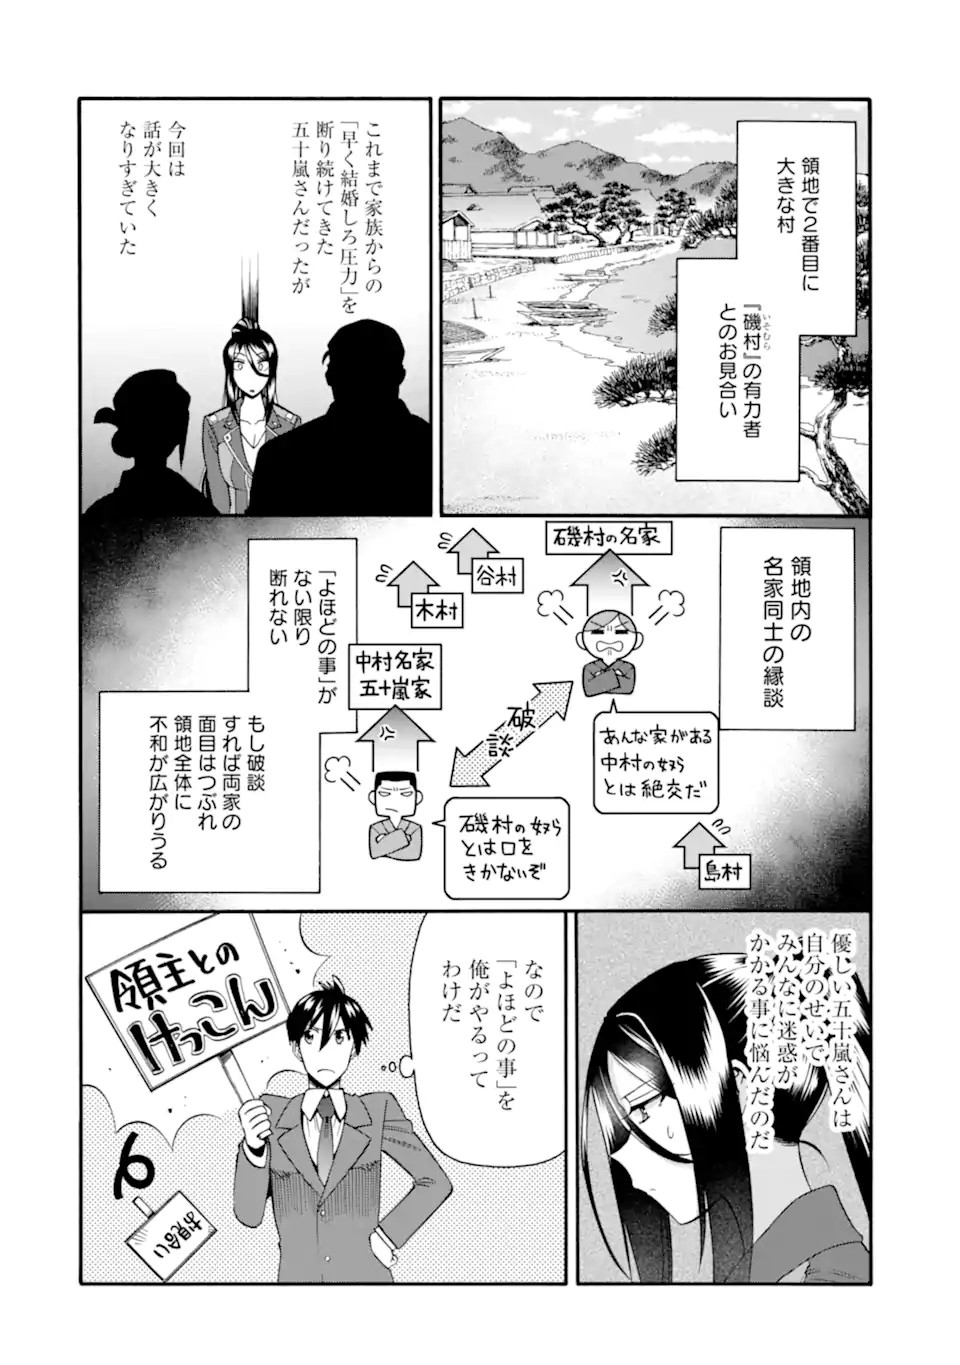 Ikusei Skill wa Mou Iranai to Yuusha Party o Kaiko Sareta no de, Taishoku Kingawari ni Moratta “Ryouchi” o Tsuyoku Shitemiru - Chapter 40.1 - Page 8